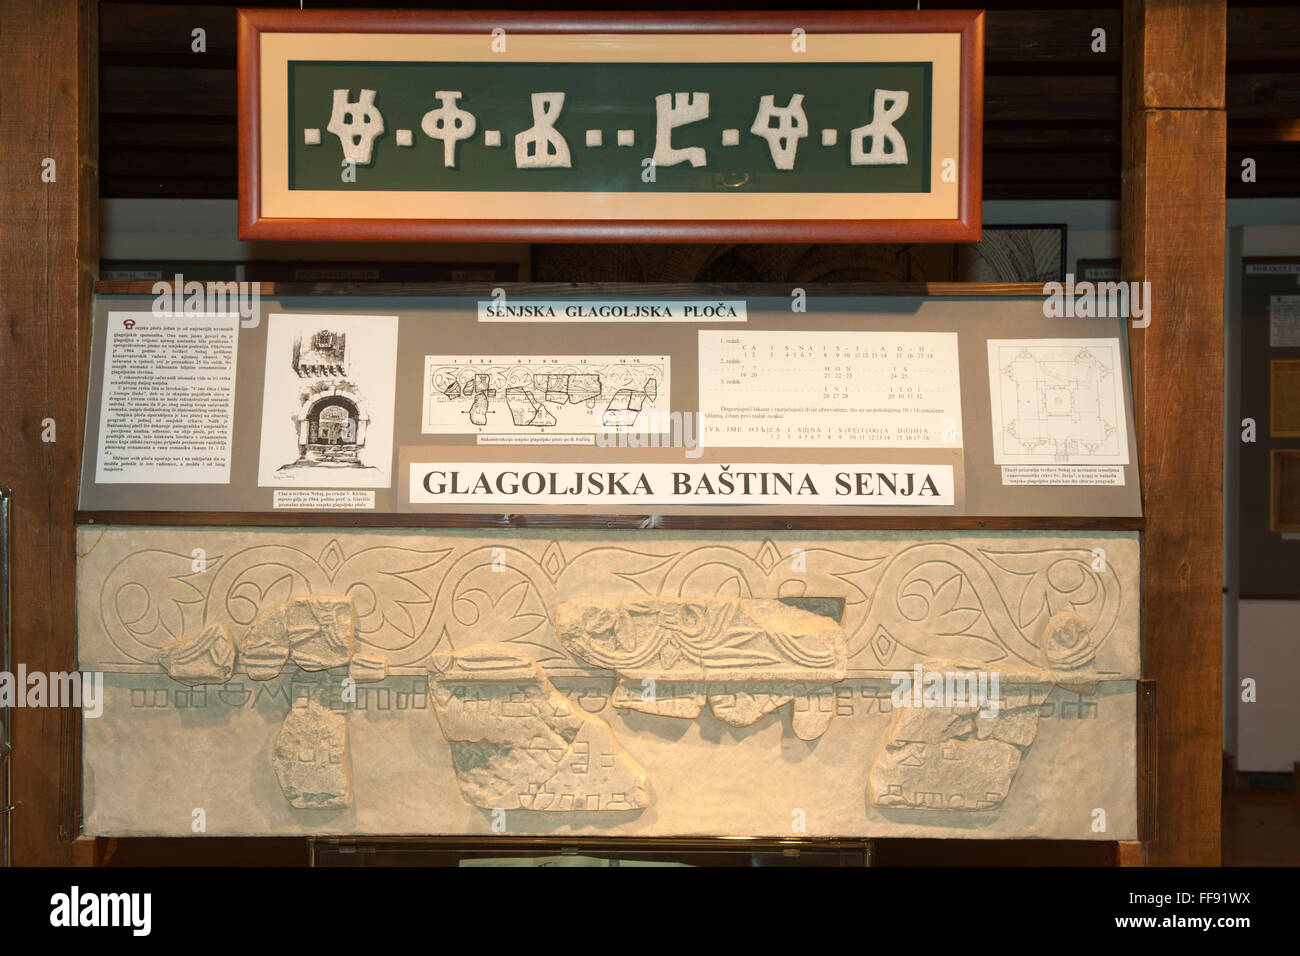 Kroatien, Kvarner Bucht, Senj, städtisches Museum im Palais der Familie Vukasovic. Steinplatte mit gagolitischer Schrift. Stock Photo